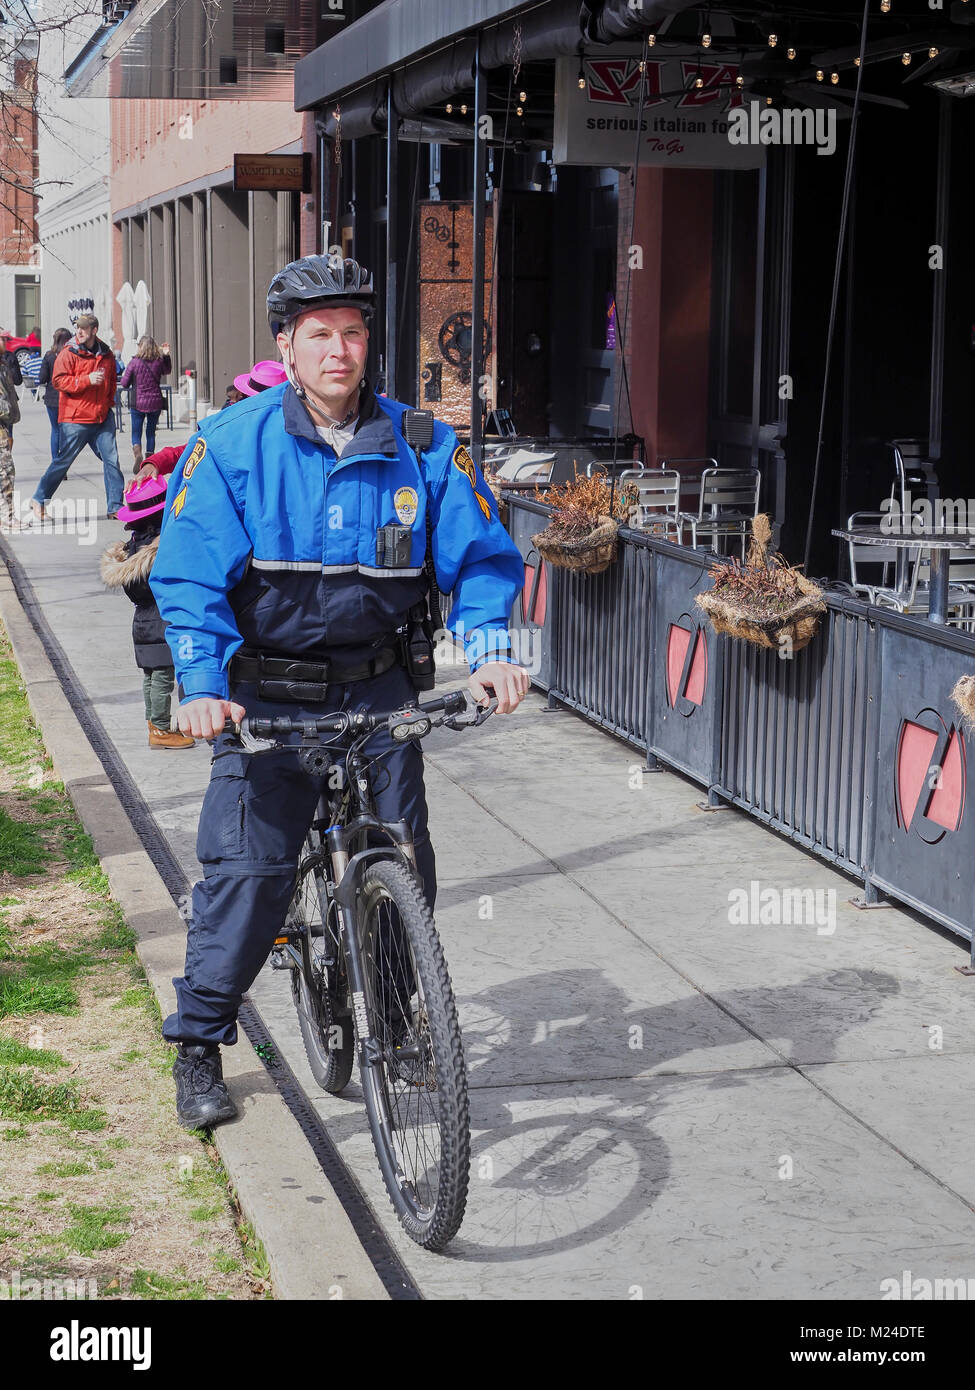 Polizisten auf einem Fahrrad führt Routine Patrol auf einer Stadt Bürgersteig in der Innenstadt von Montgomery, Alabama in den Vereinigten Staaten. Stockfoto